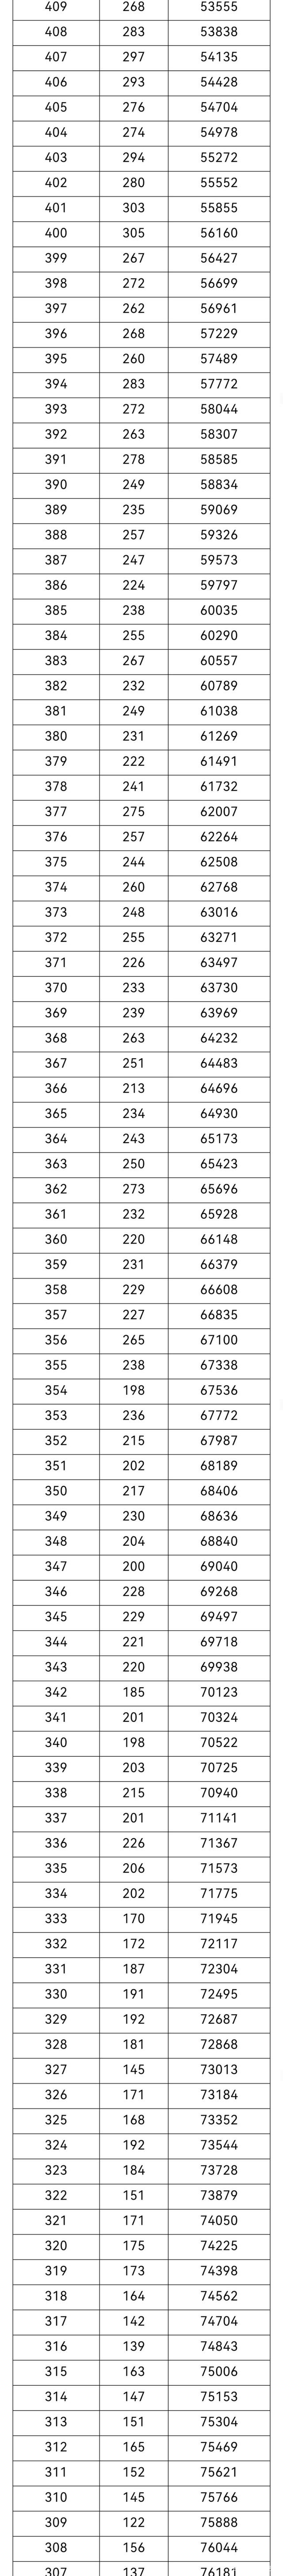 重庆2021高考分数排名位序 重庆高考成绩一分一段分数全省排名查询